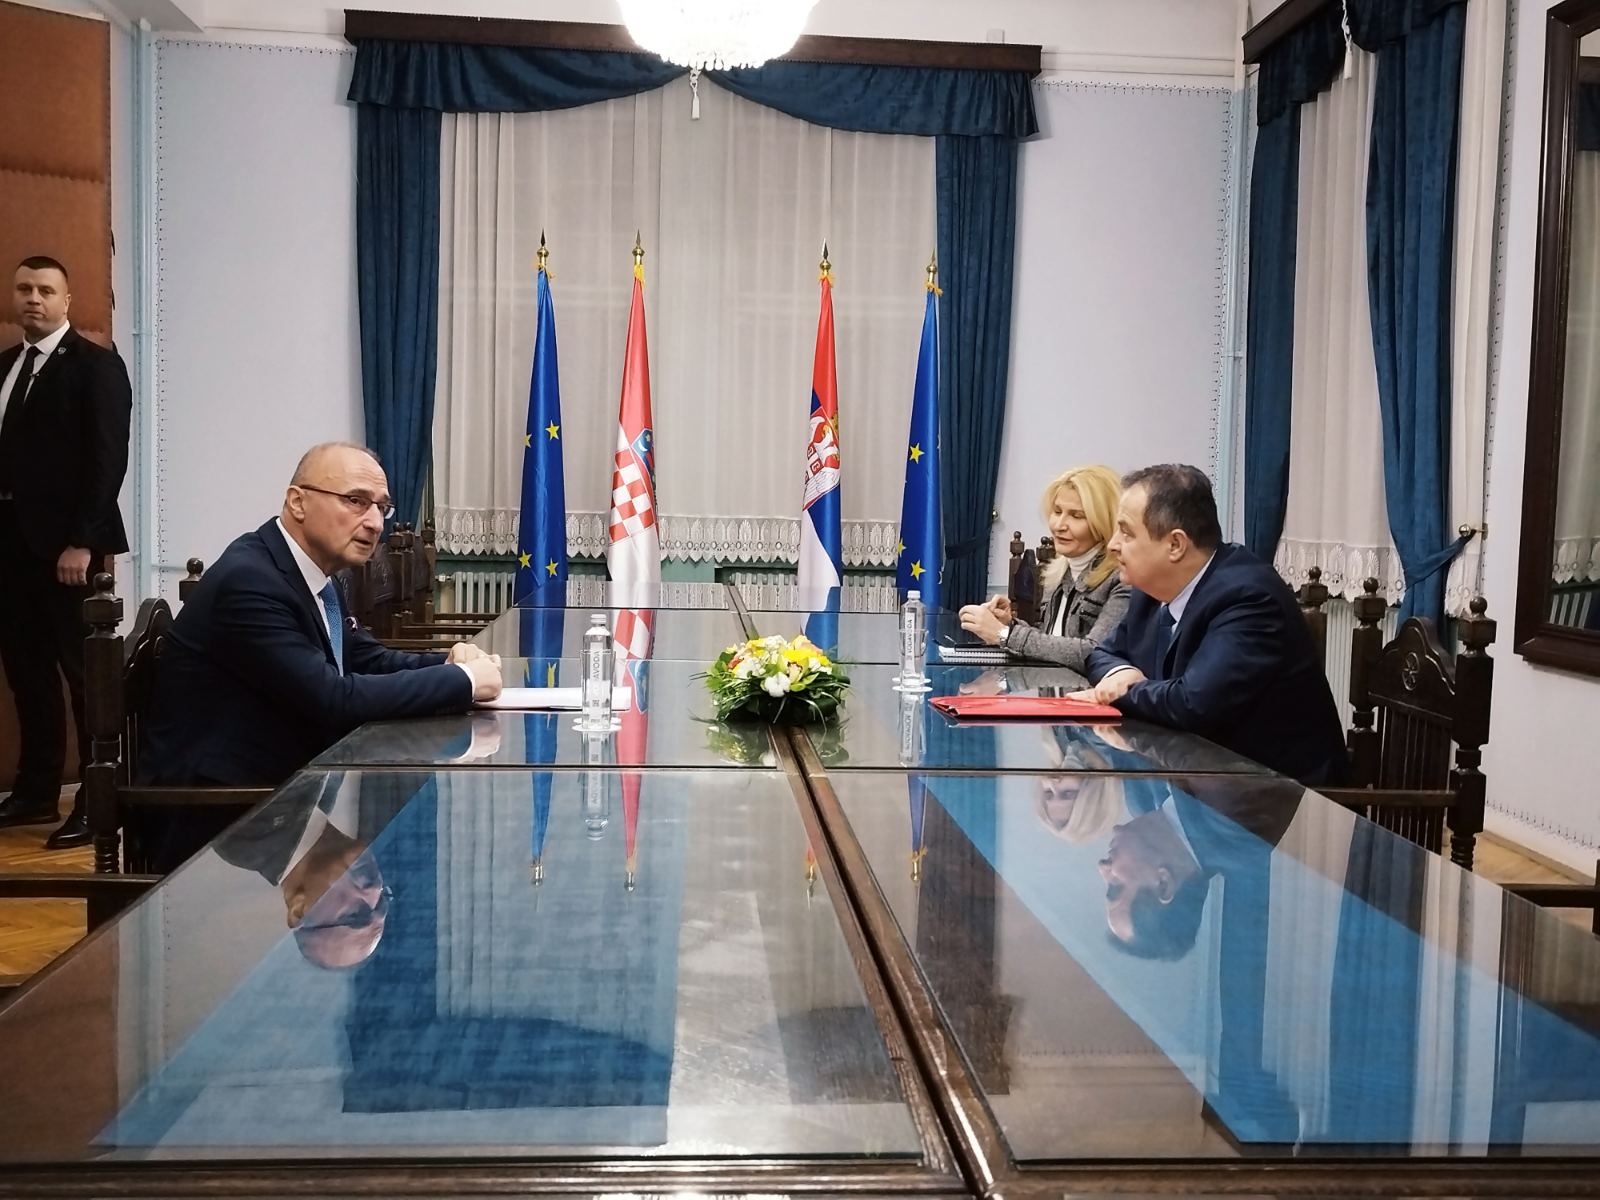 Унапређивати сарадњу Србије и Хрватске зарад добробити грађана обеју земаља